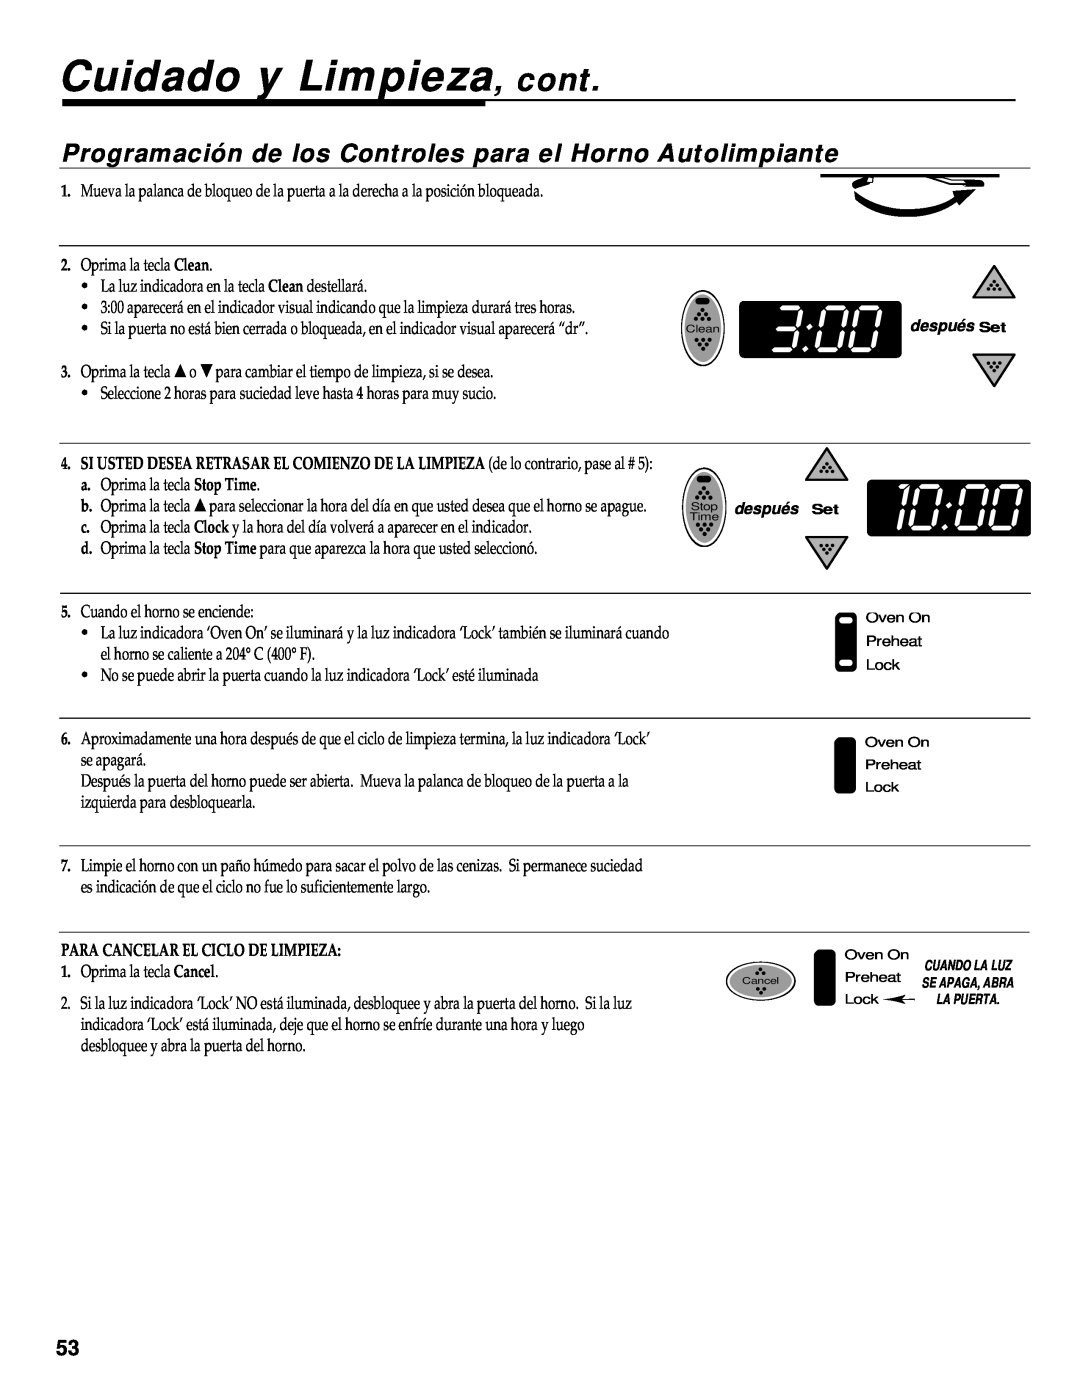 Maytag RS-1 manual Cuidado y Limpieza, cont, Programación de los Controles para el Horno Autolimpiante, 1000 